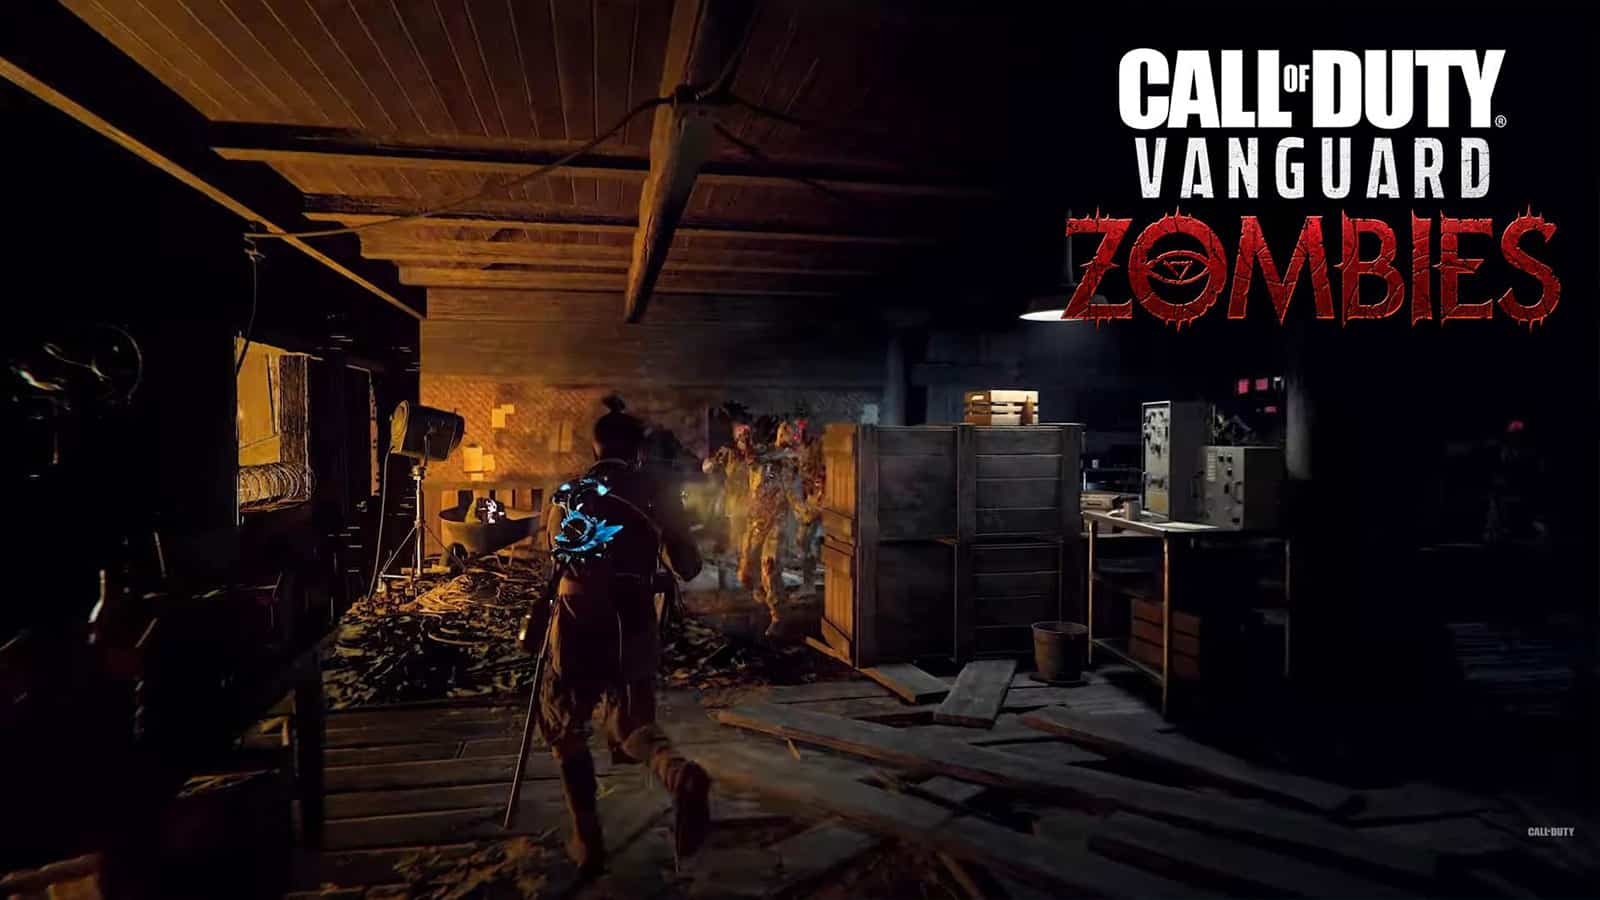 Zombies Vanguard